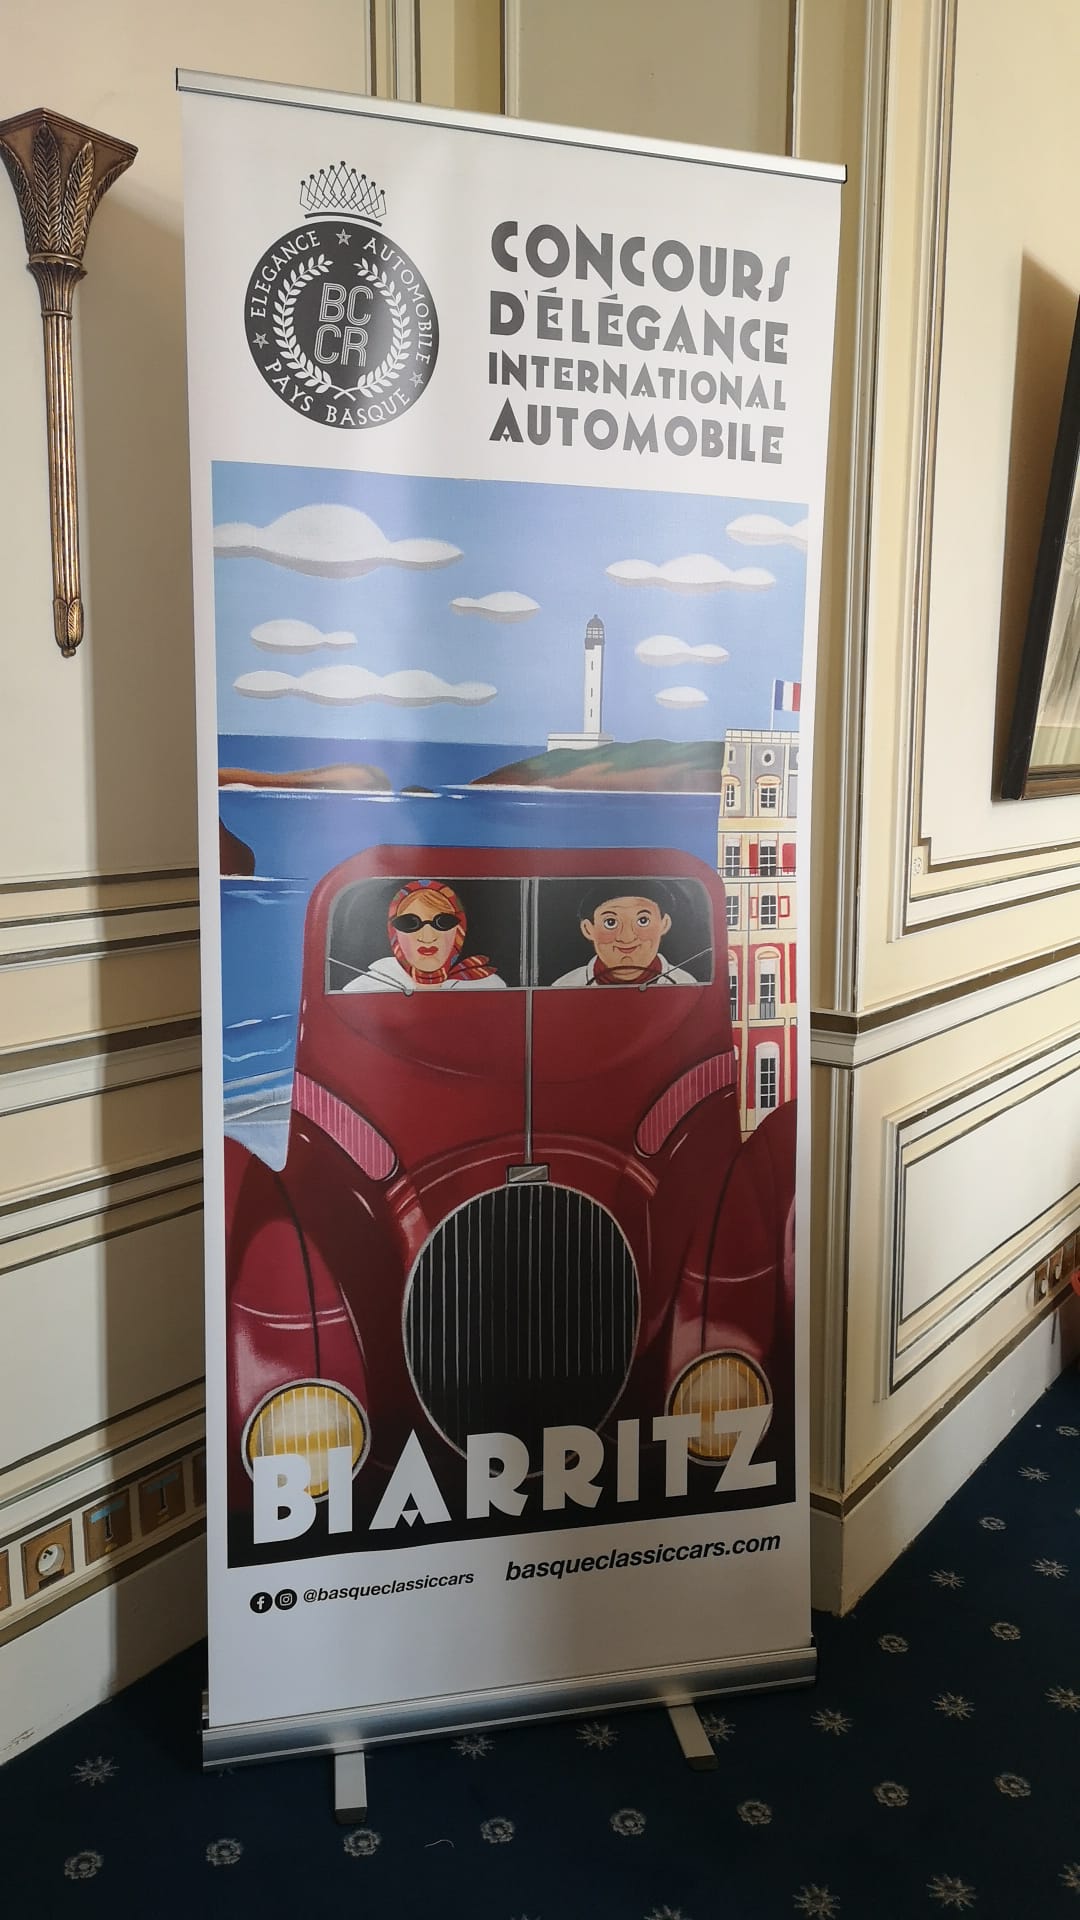 Biadrtiz_concourse_2021 Se viene: Concours d'Élégance International Automobile Biarritz